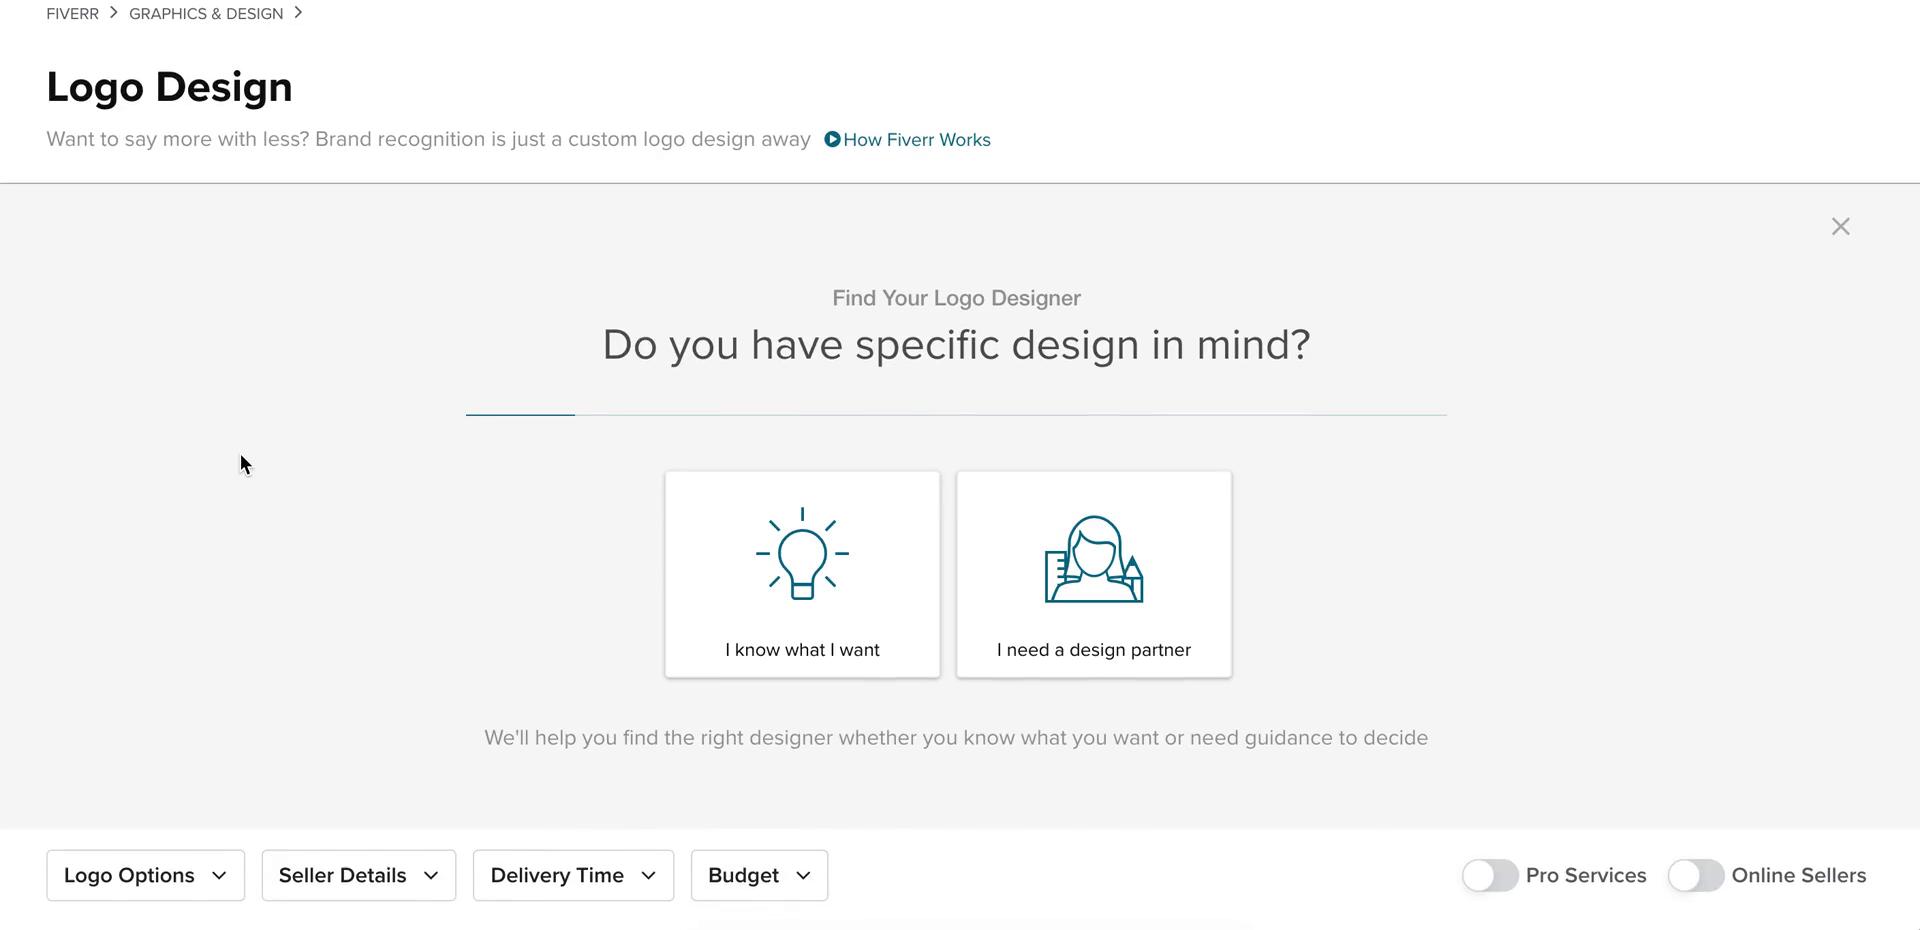 Fiverr logo design questionnaire screenshot